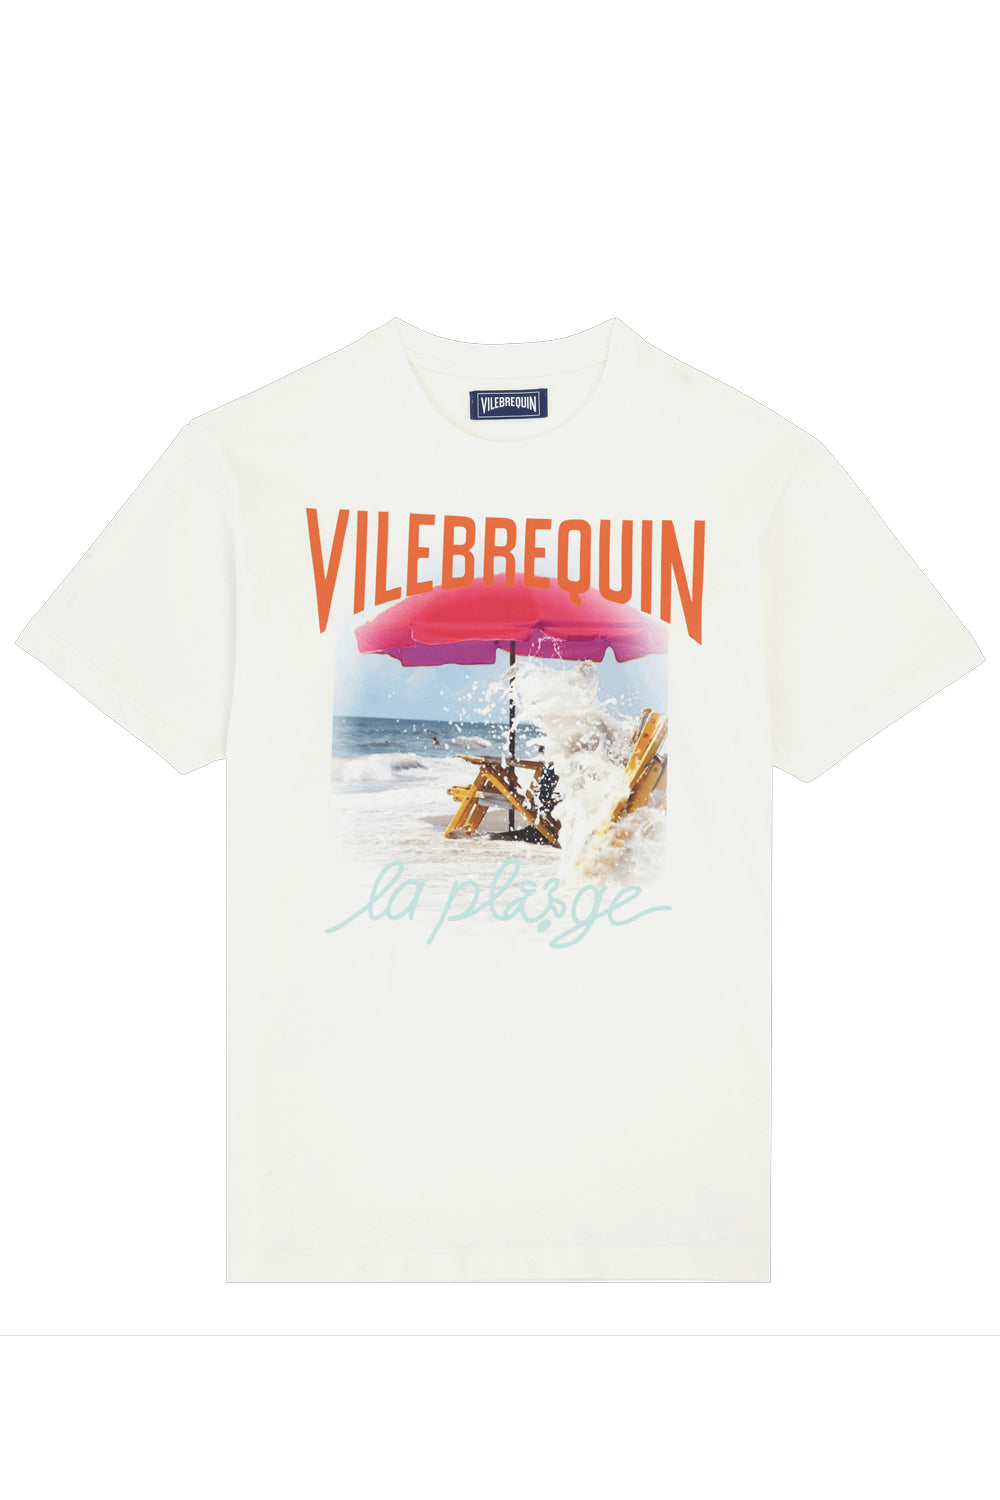 VILEBREQUIN T-shirt Wave on VBQ Beach